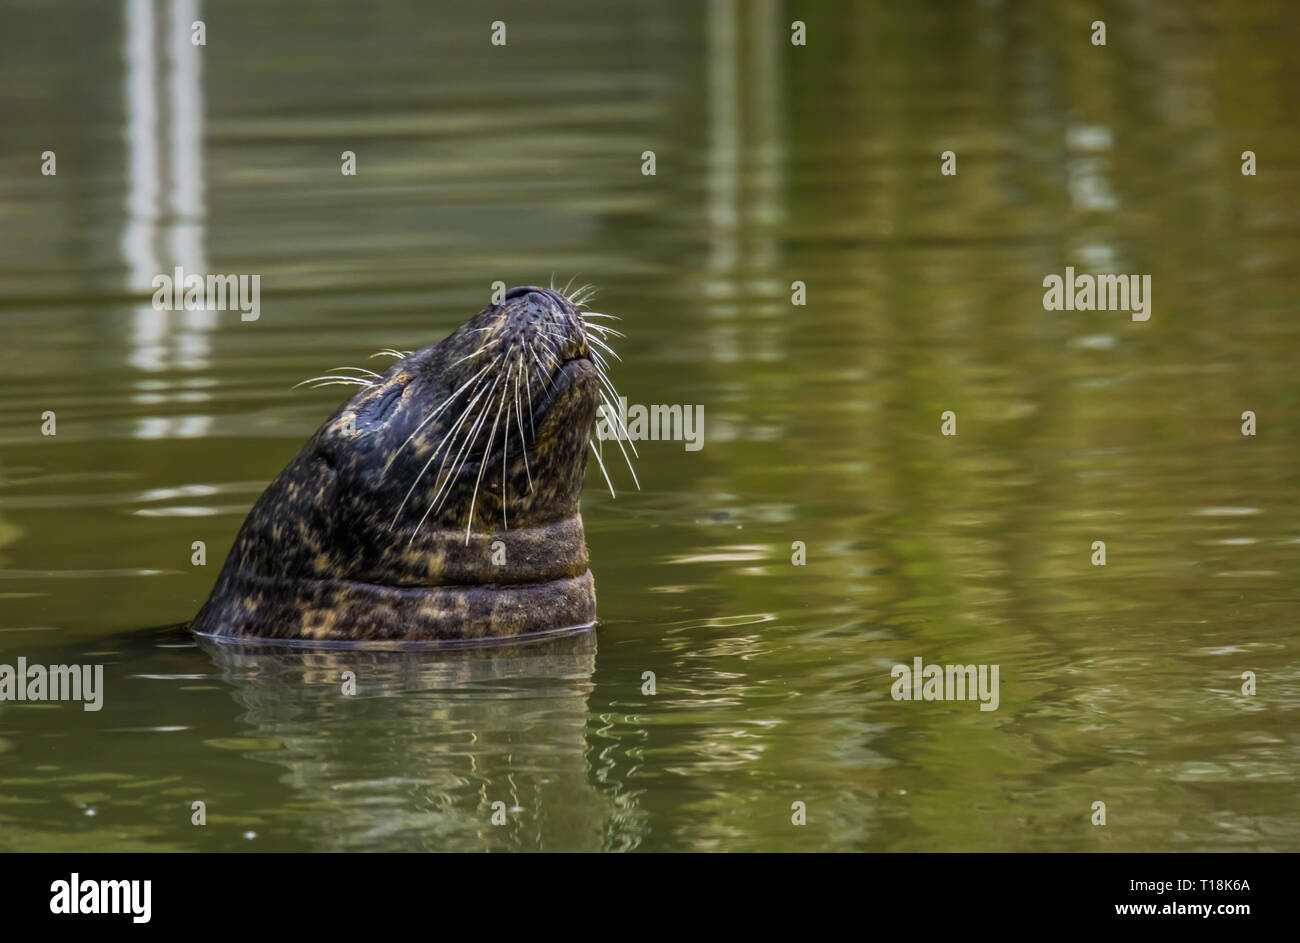 Gros plan de la face d'un sceau dans l'eau, les animaux de zoo populaire Banque D'Images